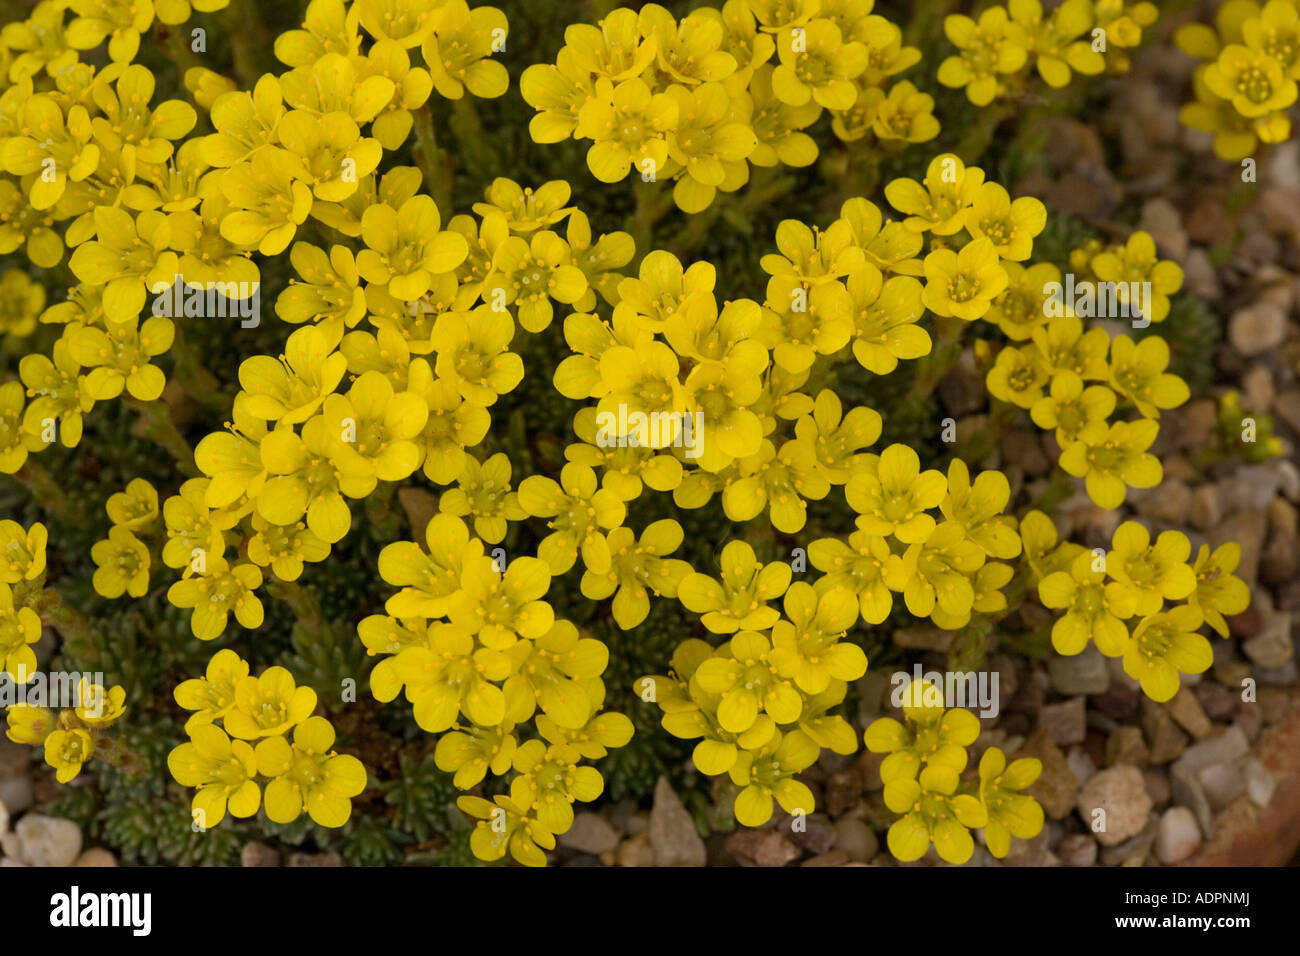 Saxifrage (Saxifraga ferdinandi-coburgi) close-up, Greece, Europe Stock Photo